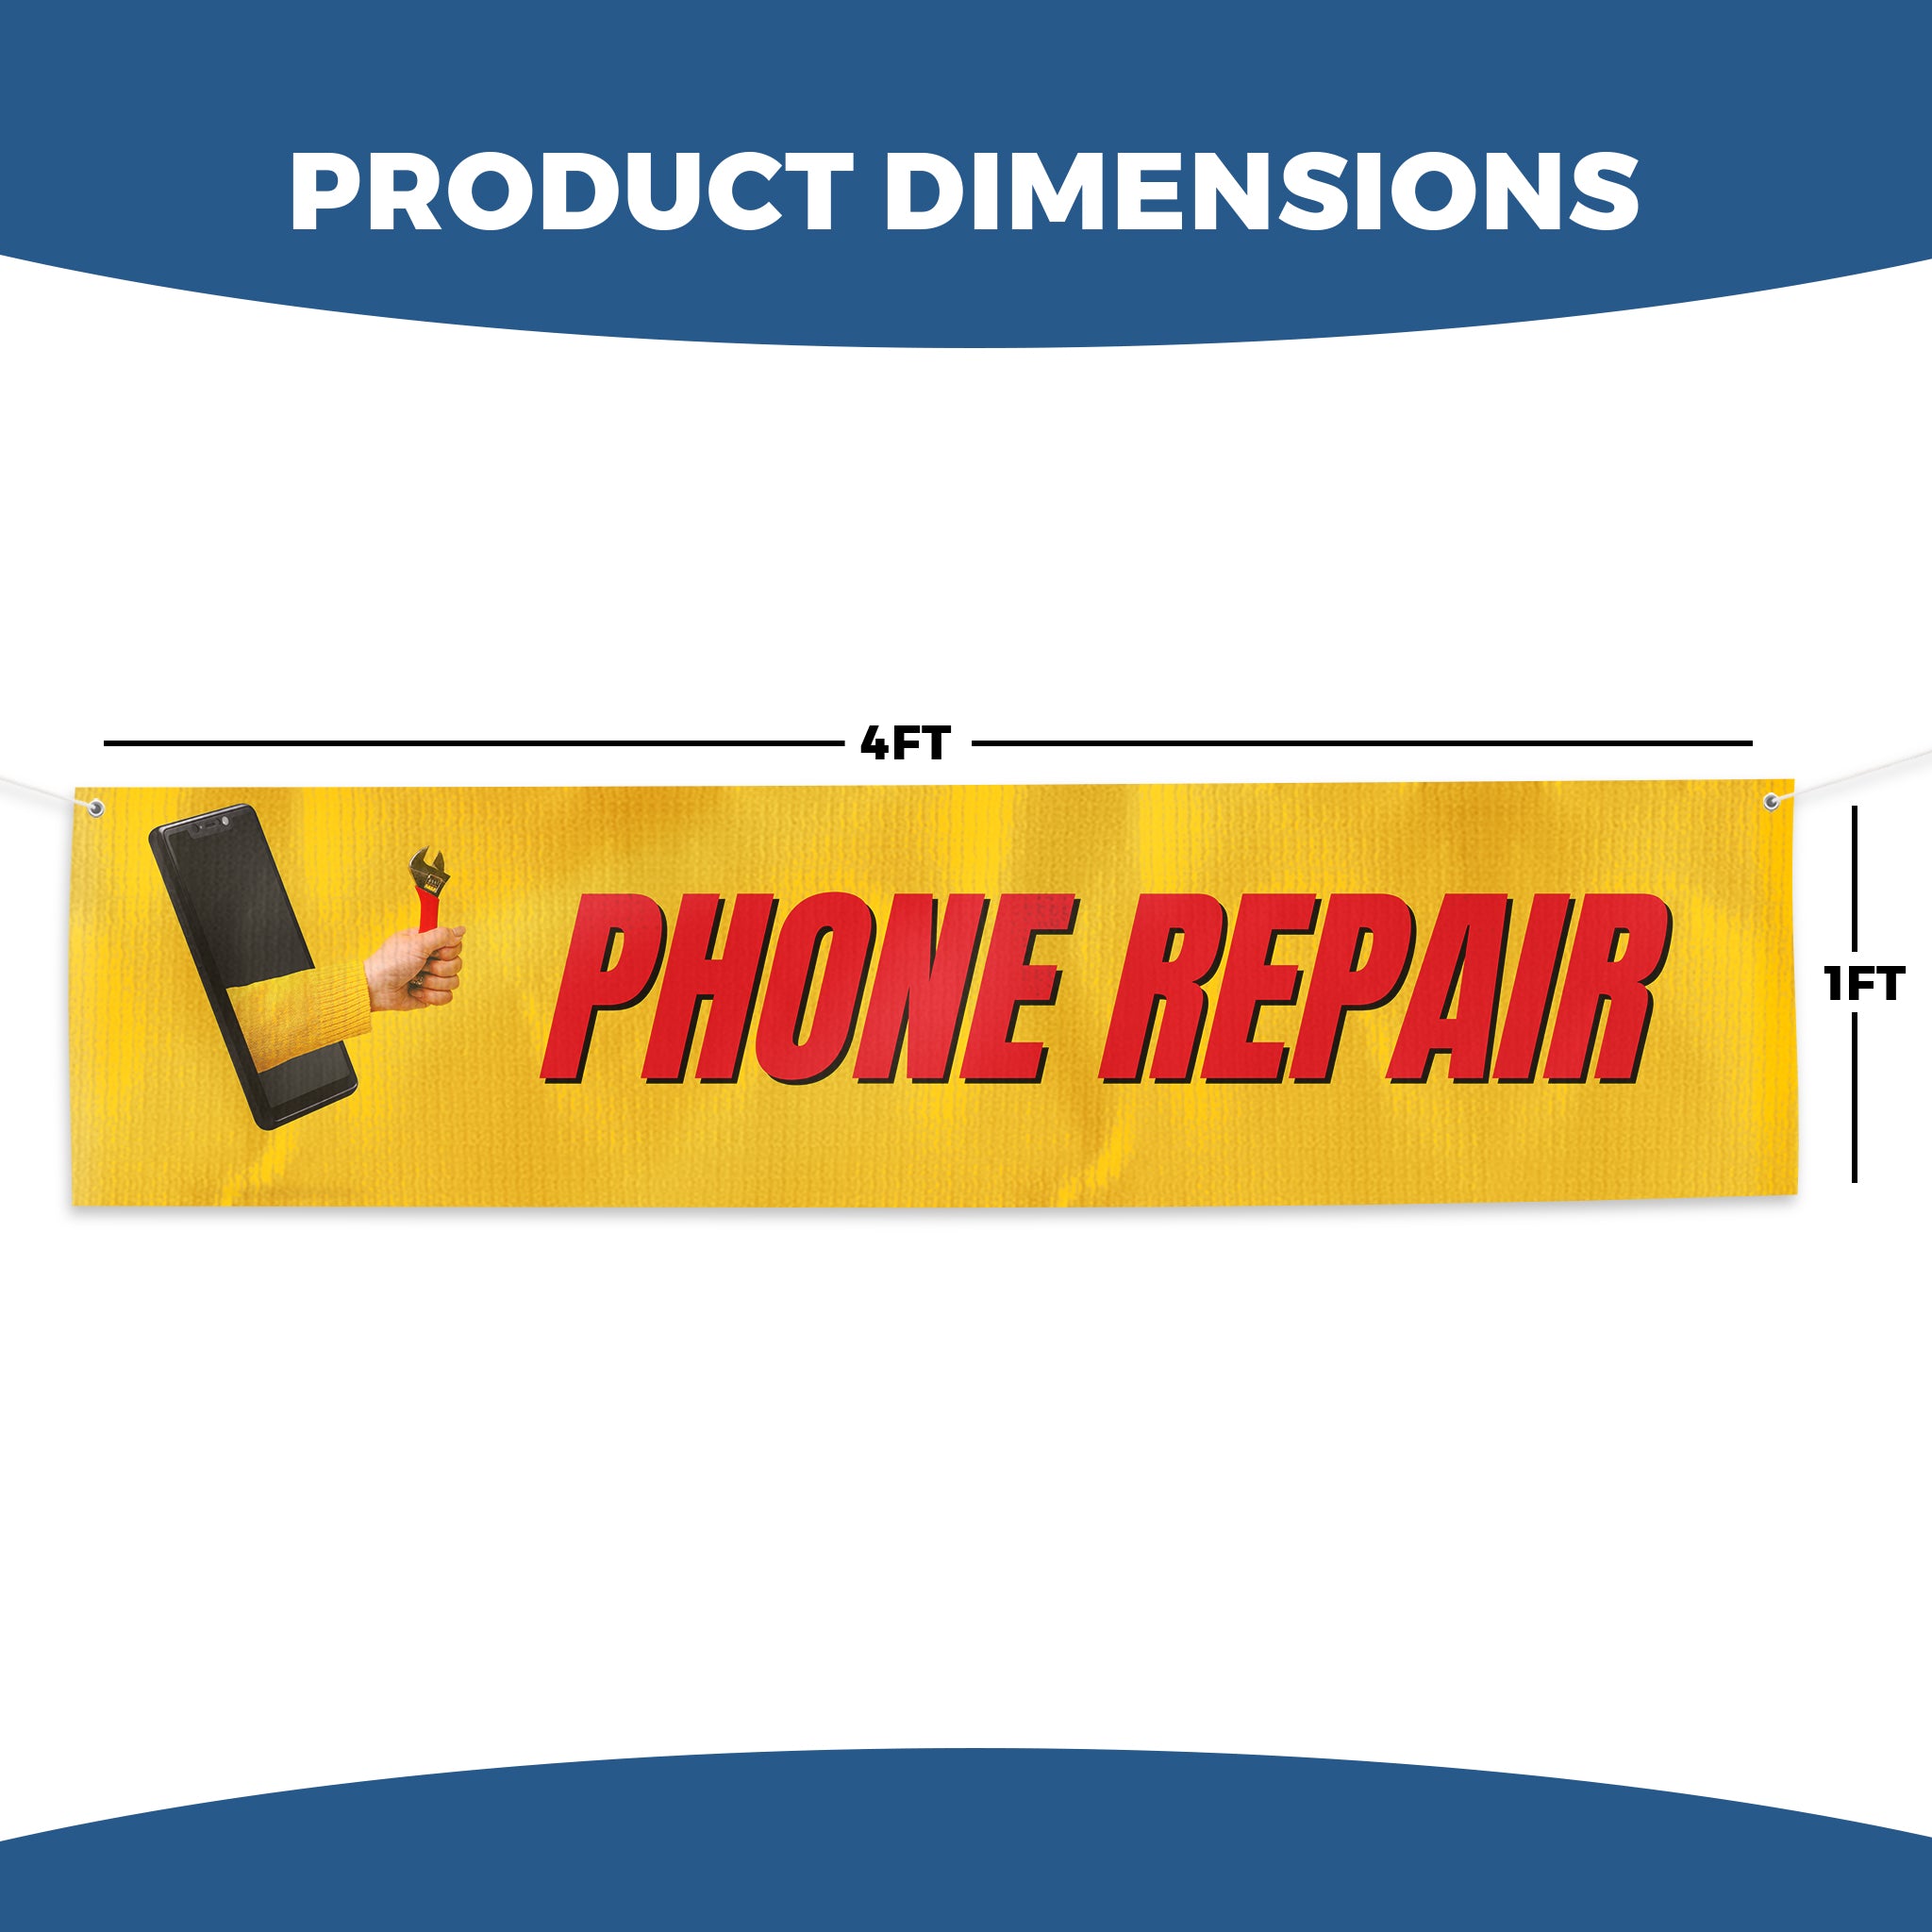 Phone Repair Large Banner